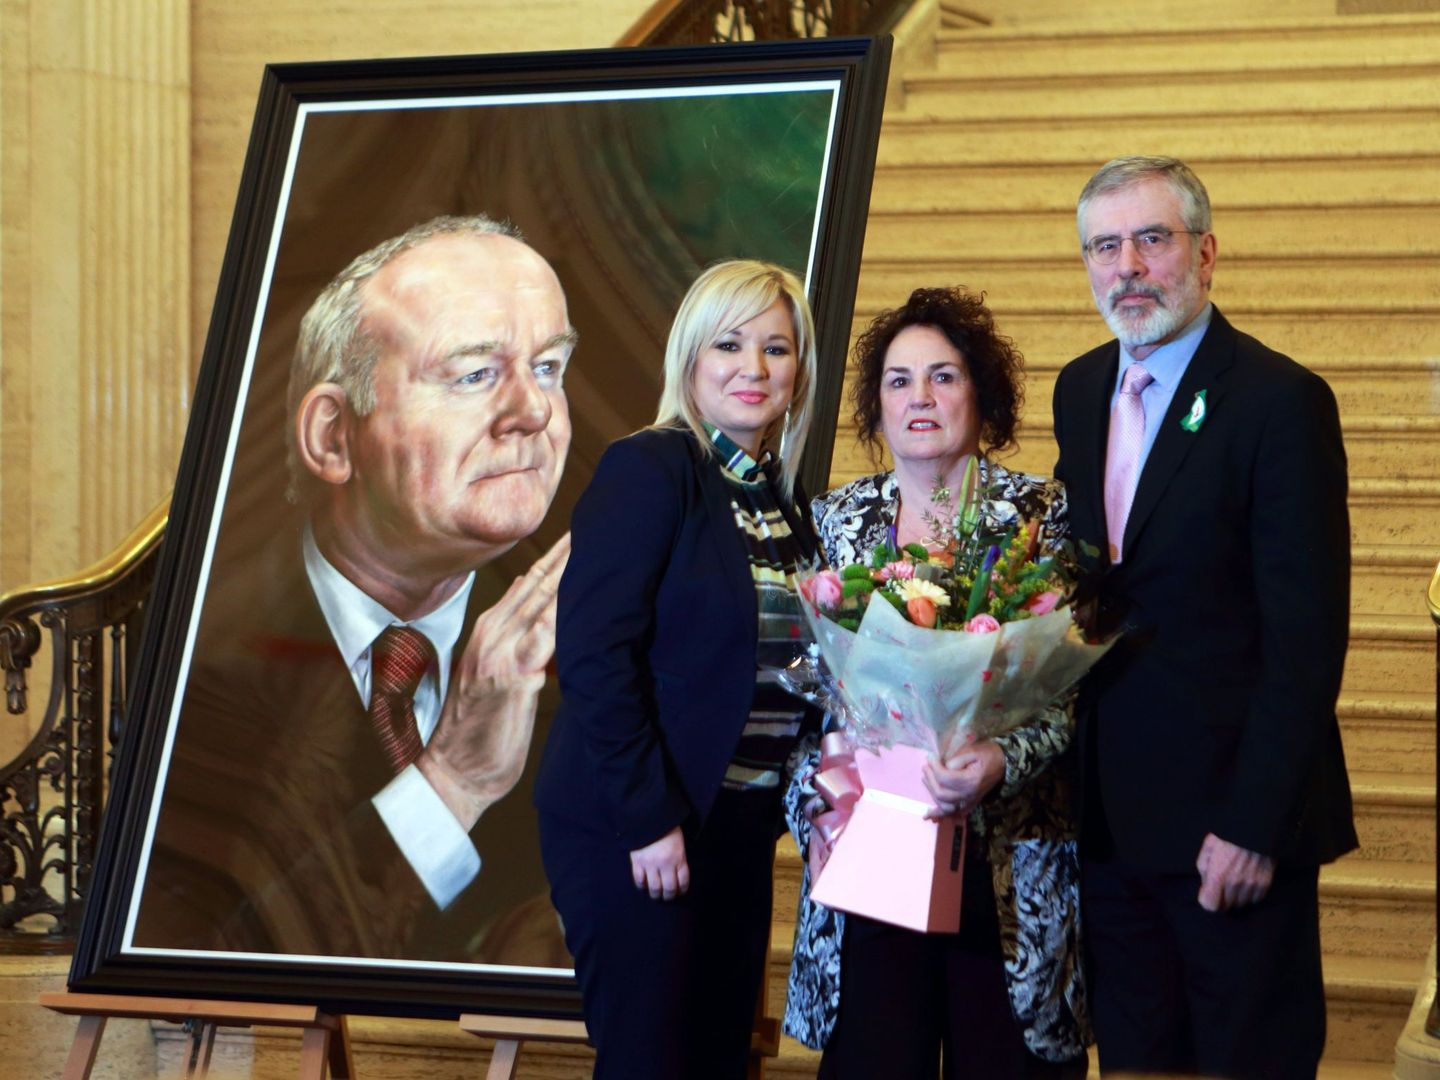 La número dos del Sinn Féin, Michelle O'Neill, Bernadette Canning, viuda del exministro principal norirlandés y exmiembro del IRA, y el líder del Sinn Fein, Gerry Adams, en la presentación del retrato de McGuinness. (EFE/Paul MacErlane)